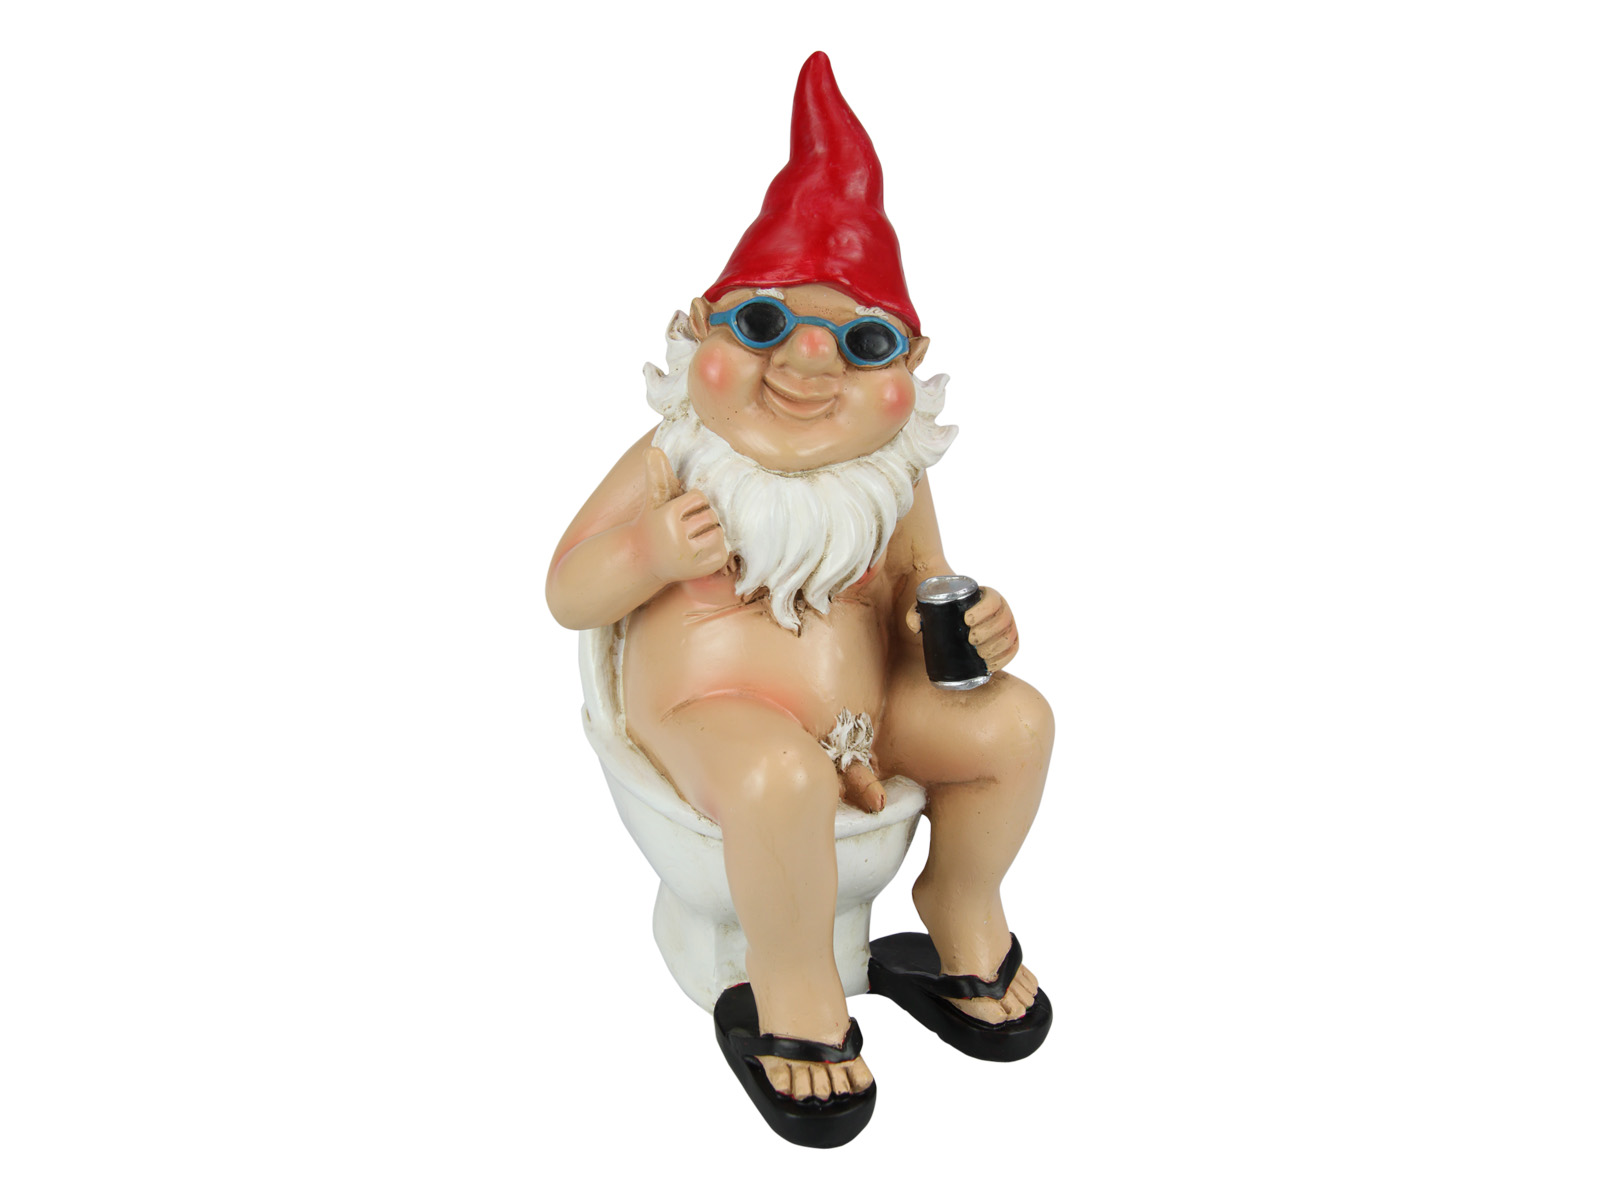 Nudist Gnome Sitting on Toilet